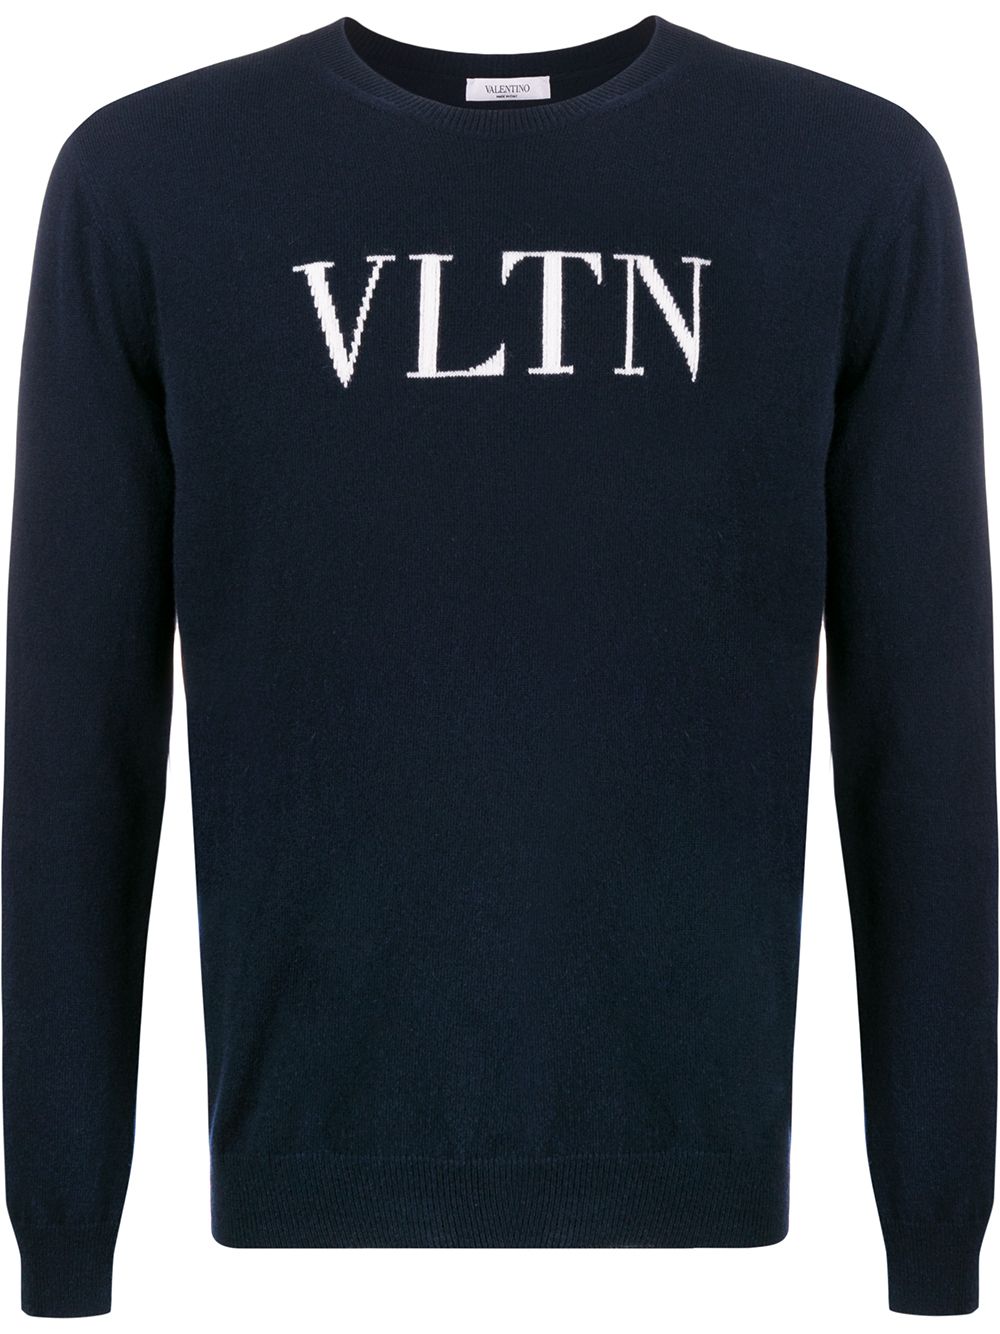 레드데이즈 - VALENTINO VLTN 니트 스웨터